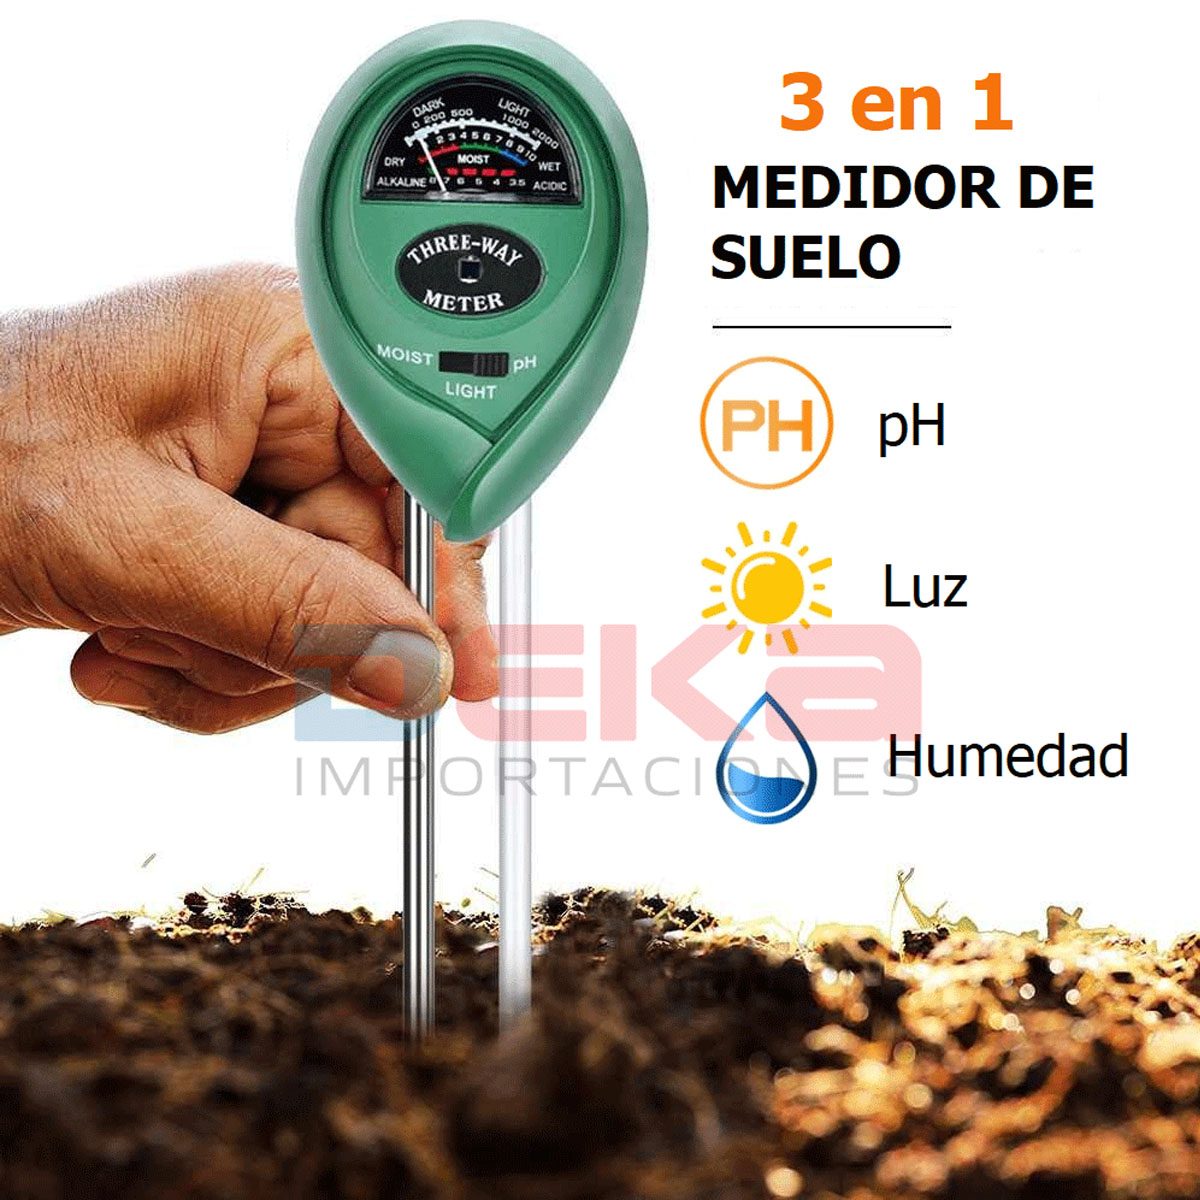 https://www.dekaimportaciones.com/wp-content/uploads/2022/02/product-medidor-test-para-suelo-3-en-1-ph-luz-y-humedad.jpg